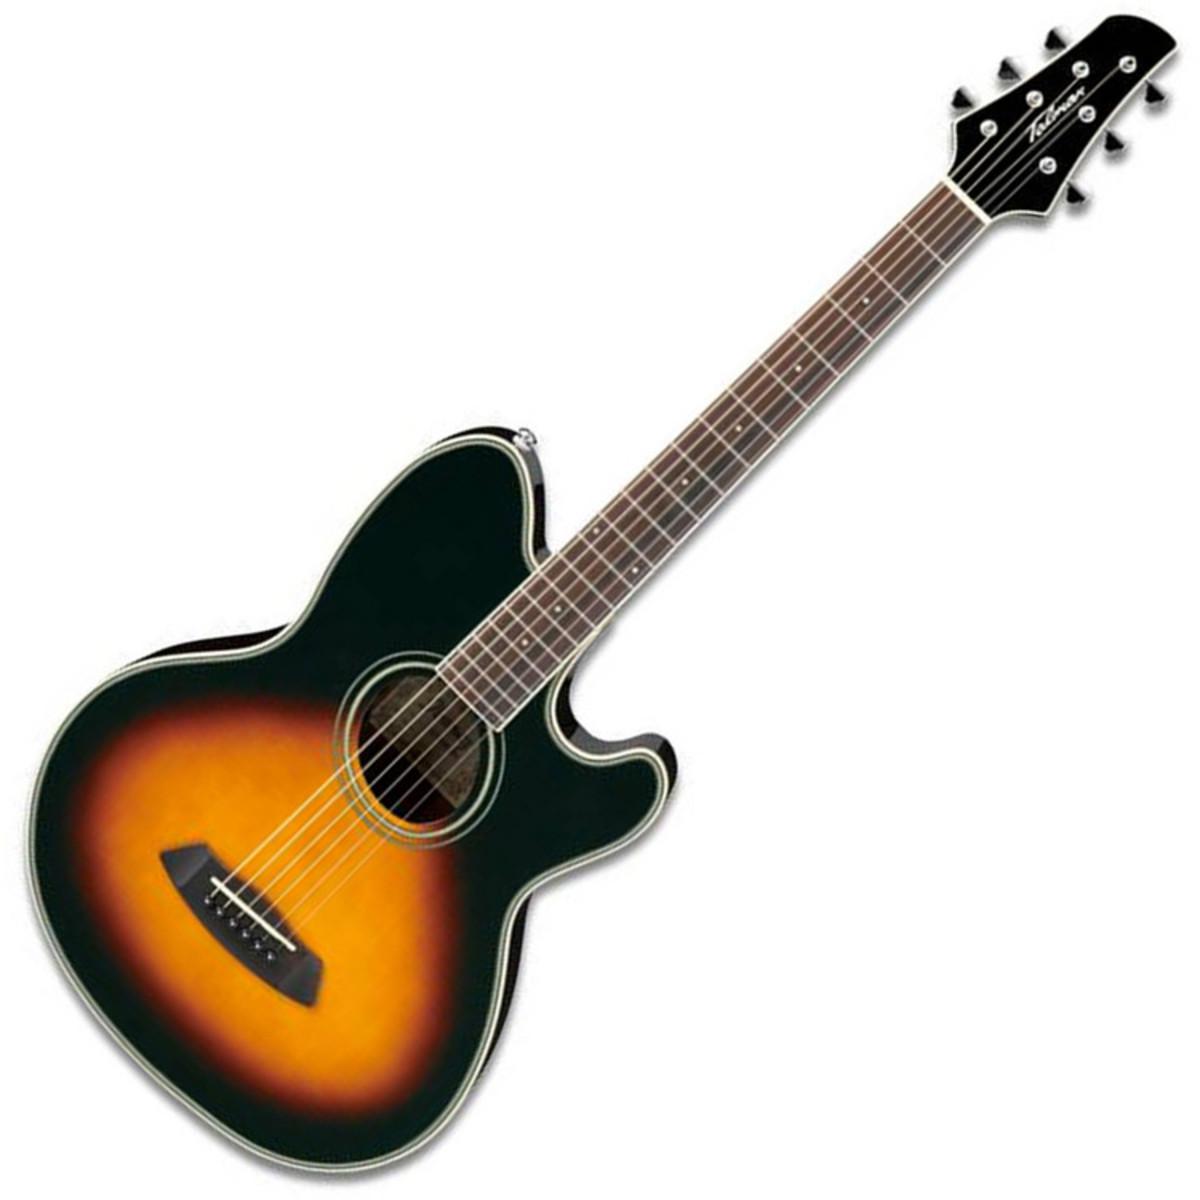 Ibañez - Guitarra Electroacústica Talman, Color Sombra Mod.TCY70-VS_34